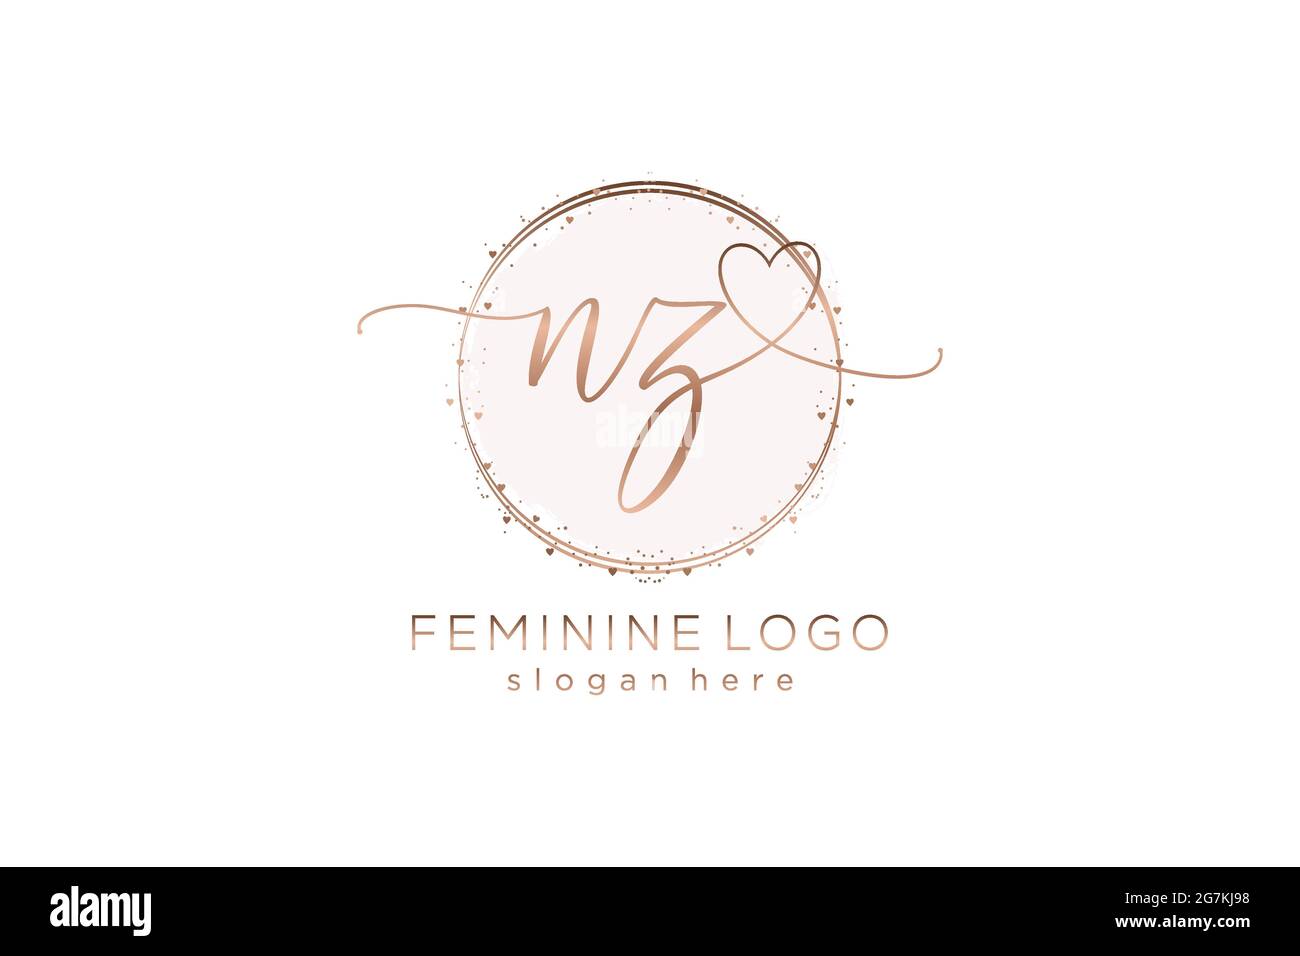 Logo NZ manoscritto con logo vettoriale a forma di cerchio di matrimonio iniziale, moda, floreale e botanico con template creativo. Illustrazione Vettoriale